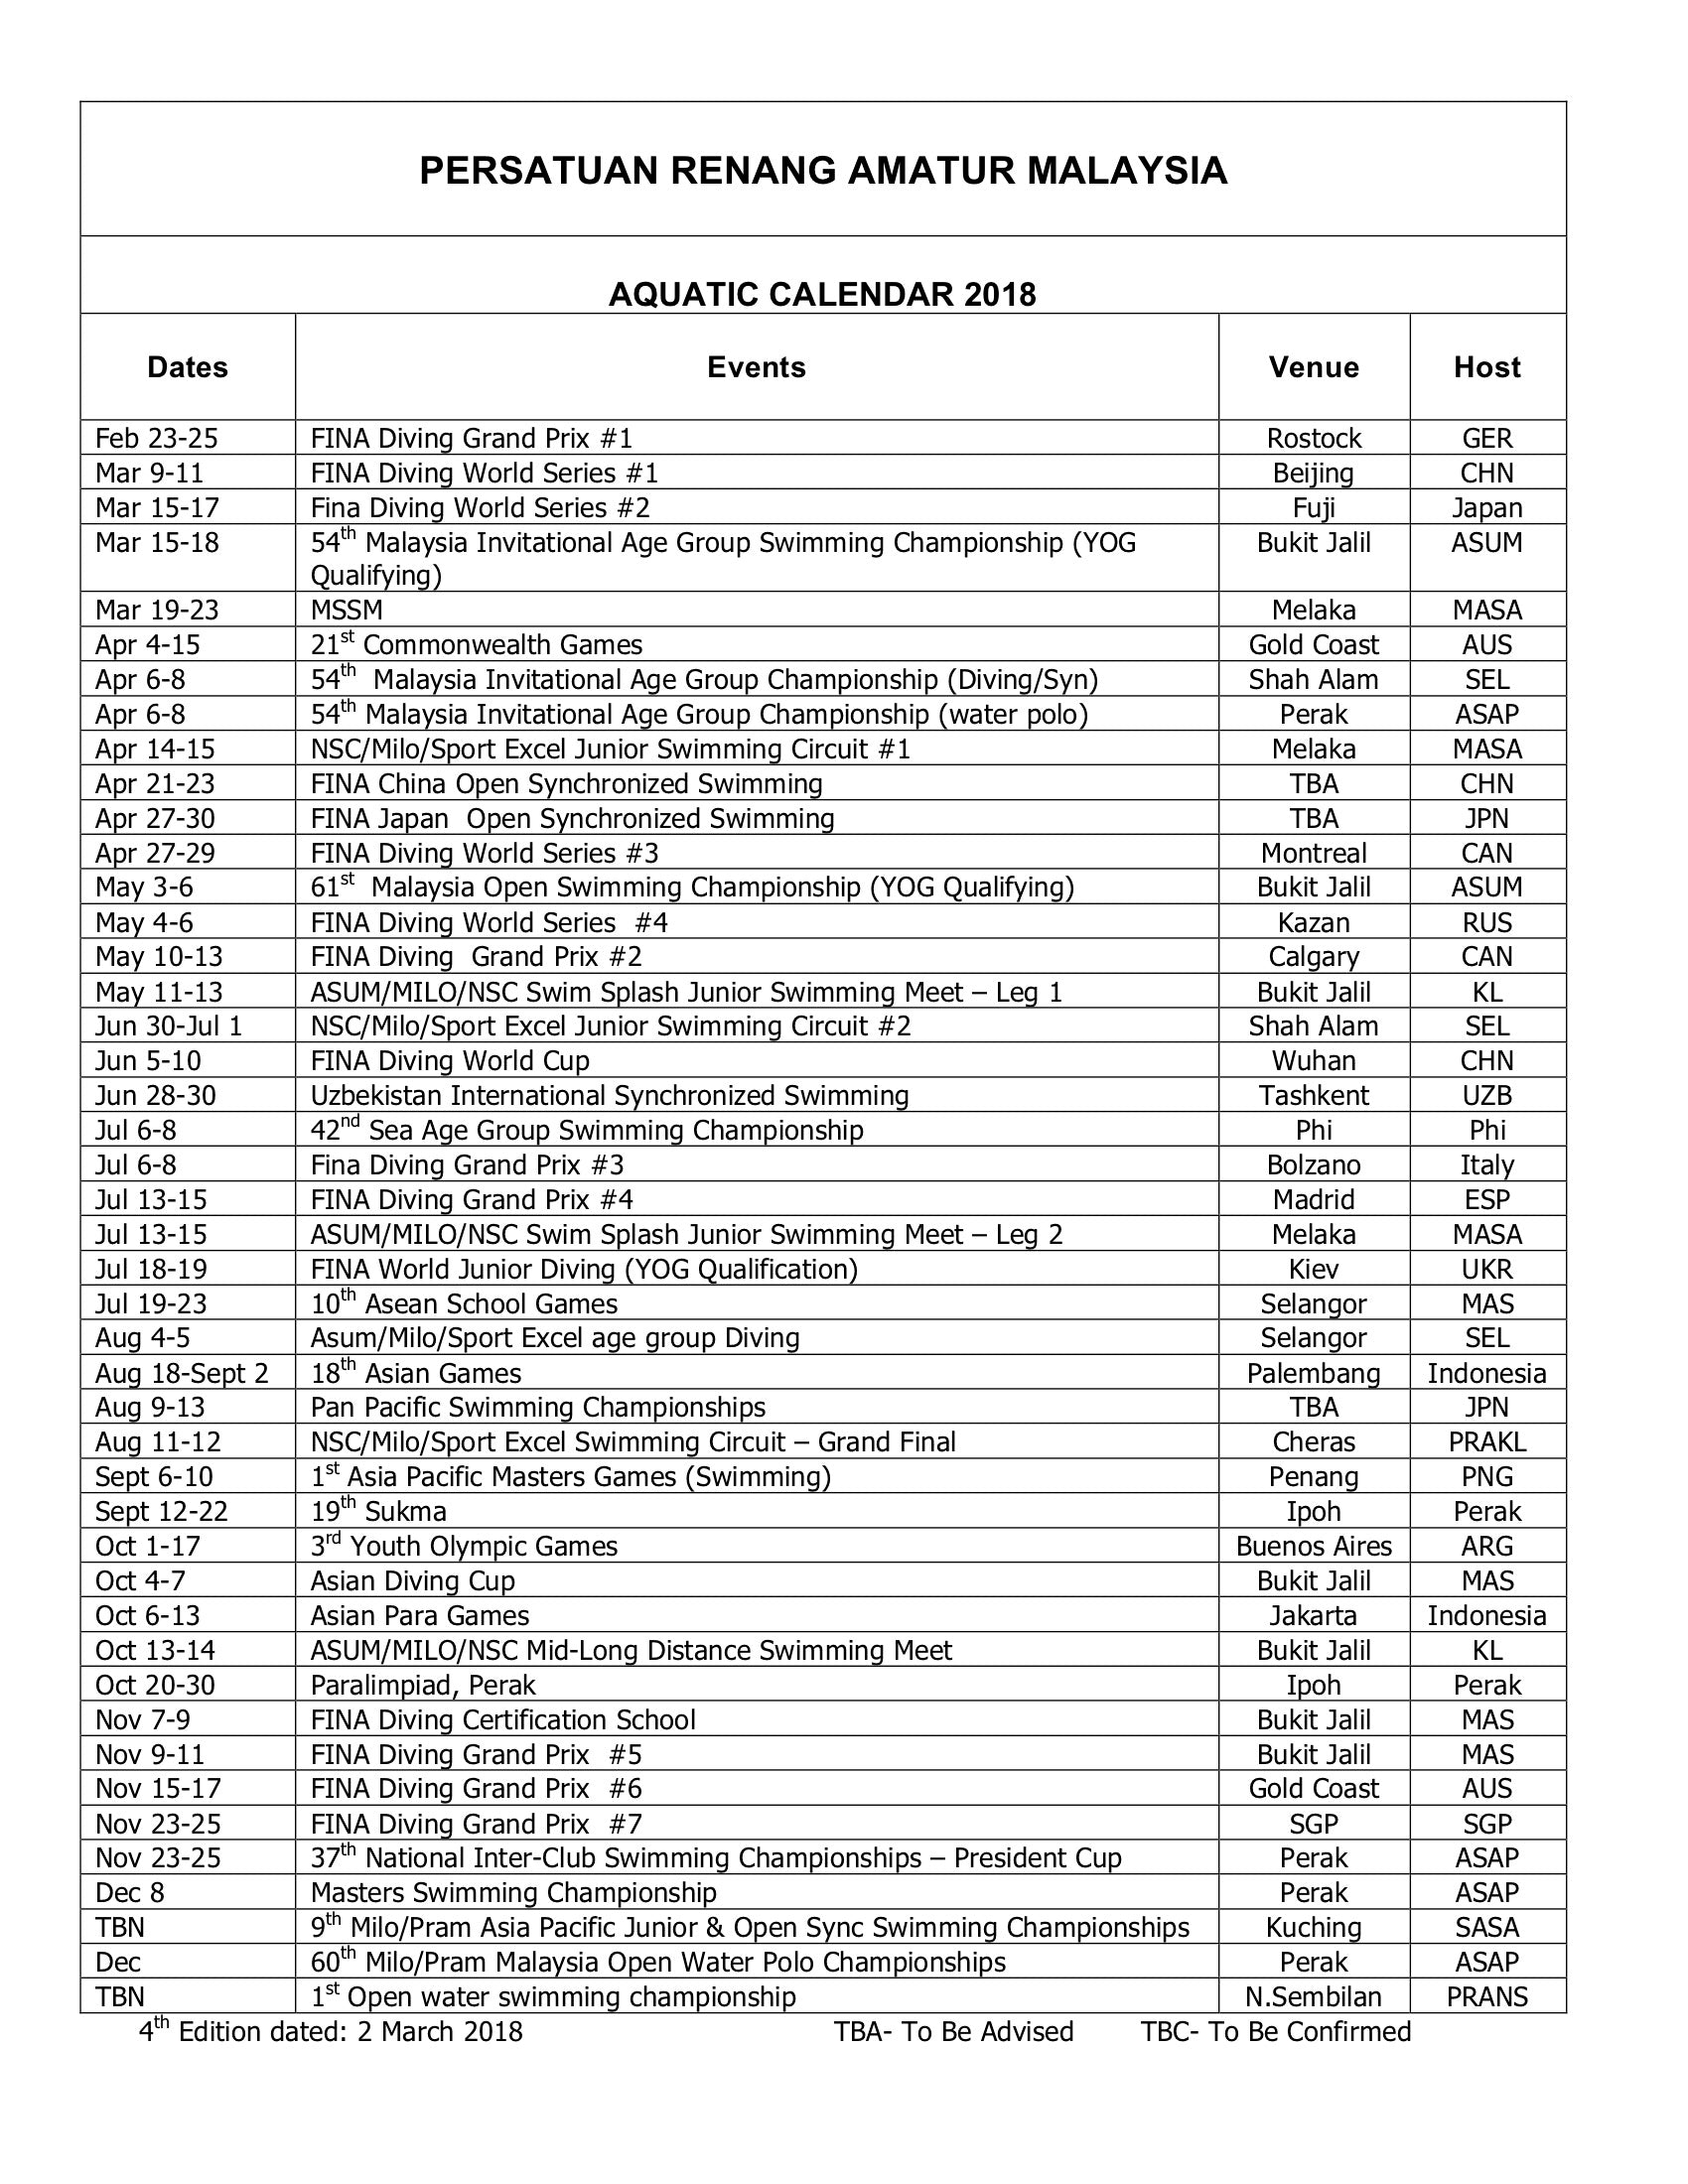 ASUM Aquatic Calendar 2018